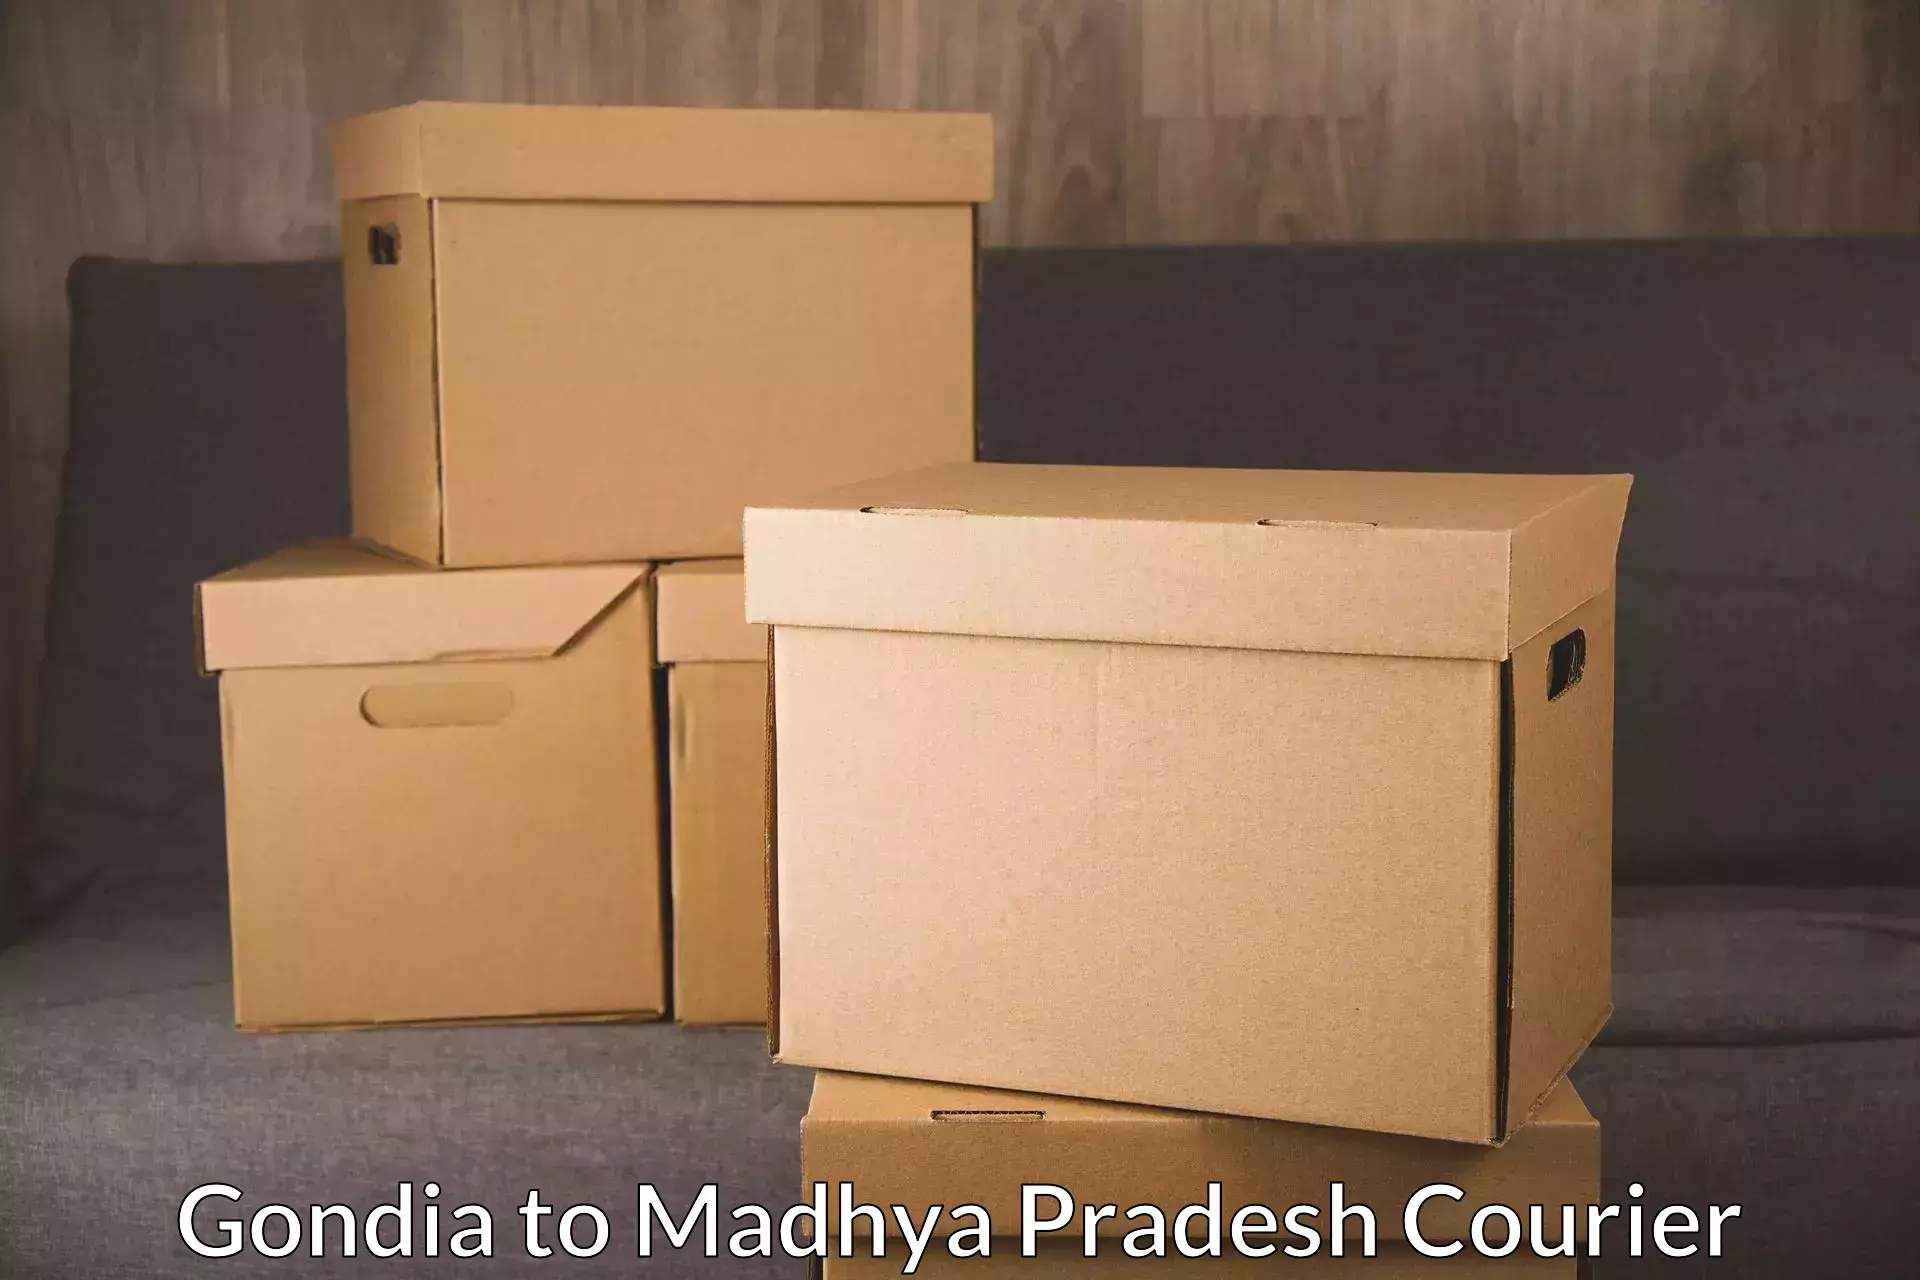 Ocean freight courier Gondia to Madhya Pradesh